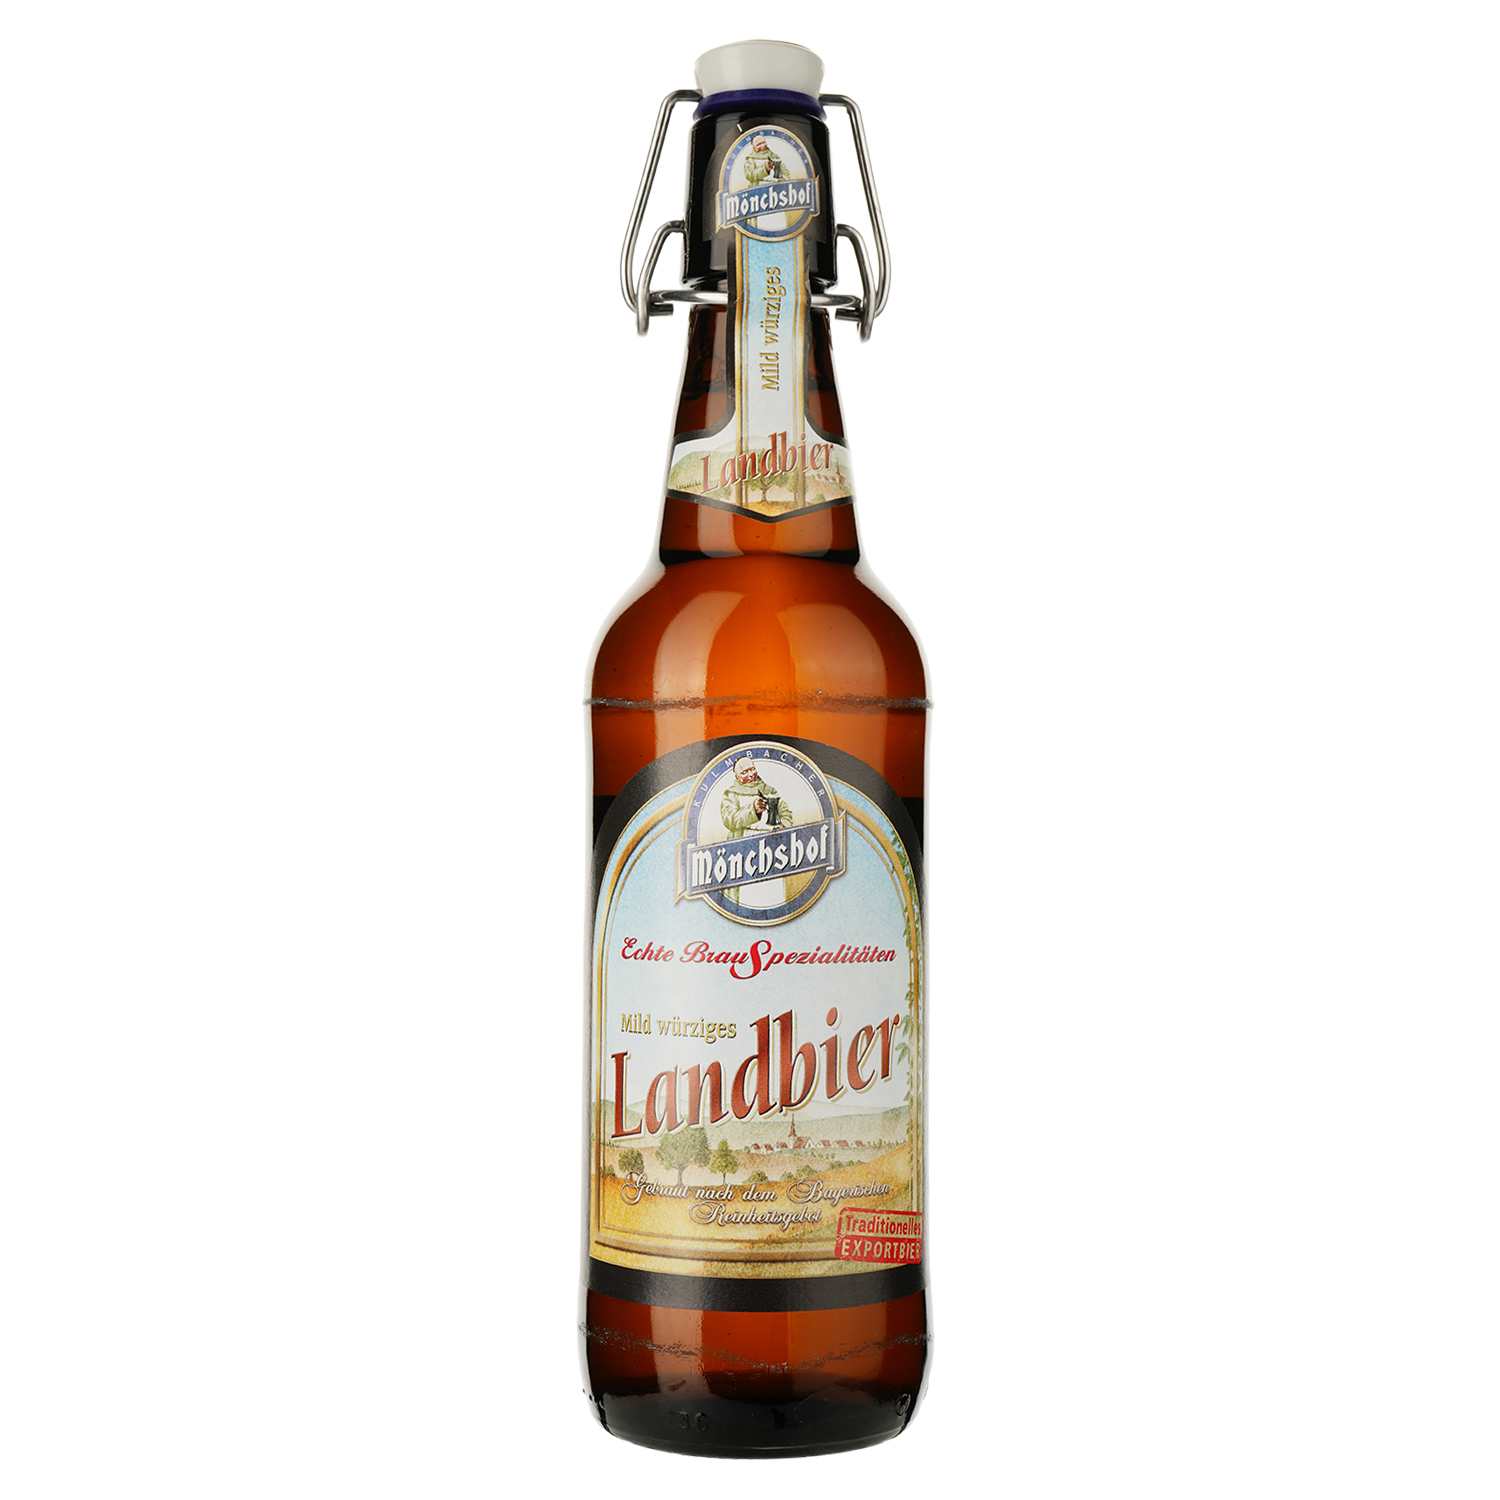 Пиво Monchshof Landbier светлое, 5.4%, 0.5 л - фото 1